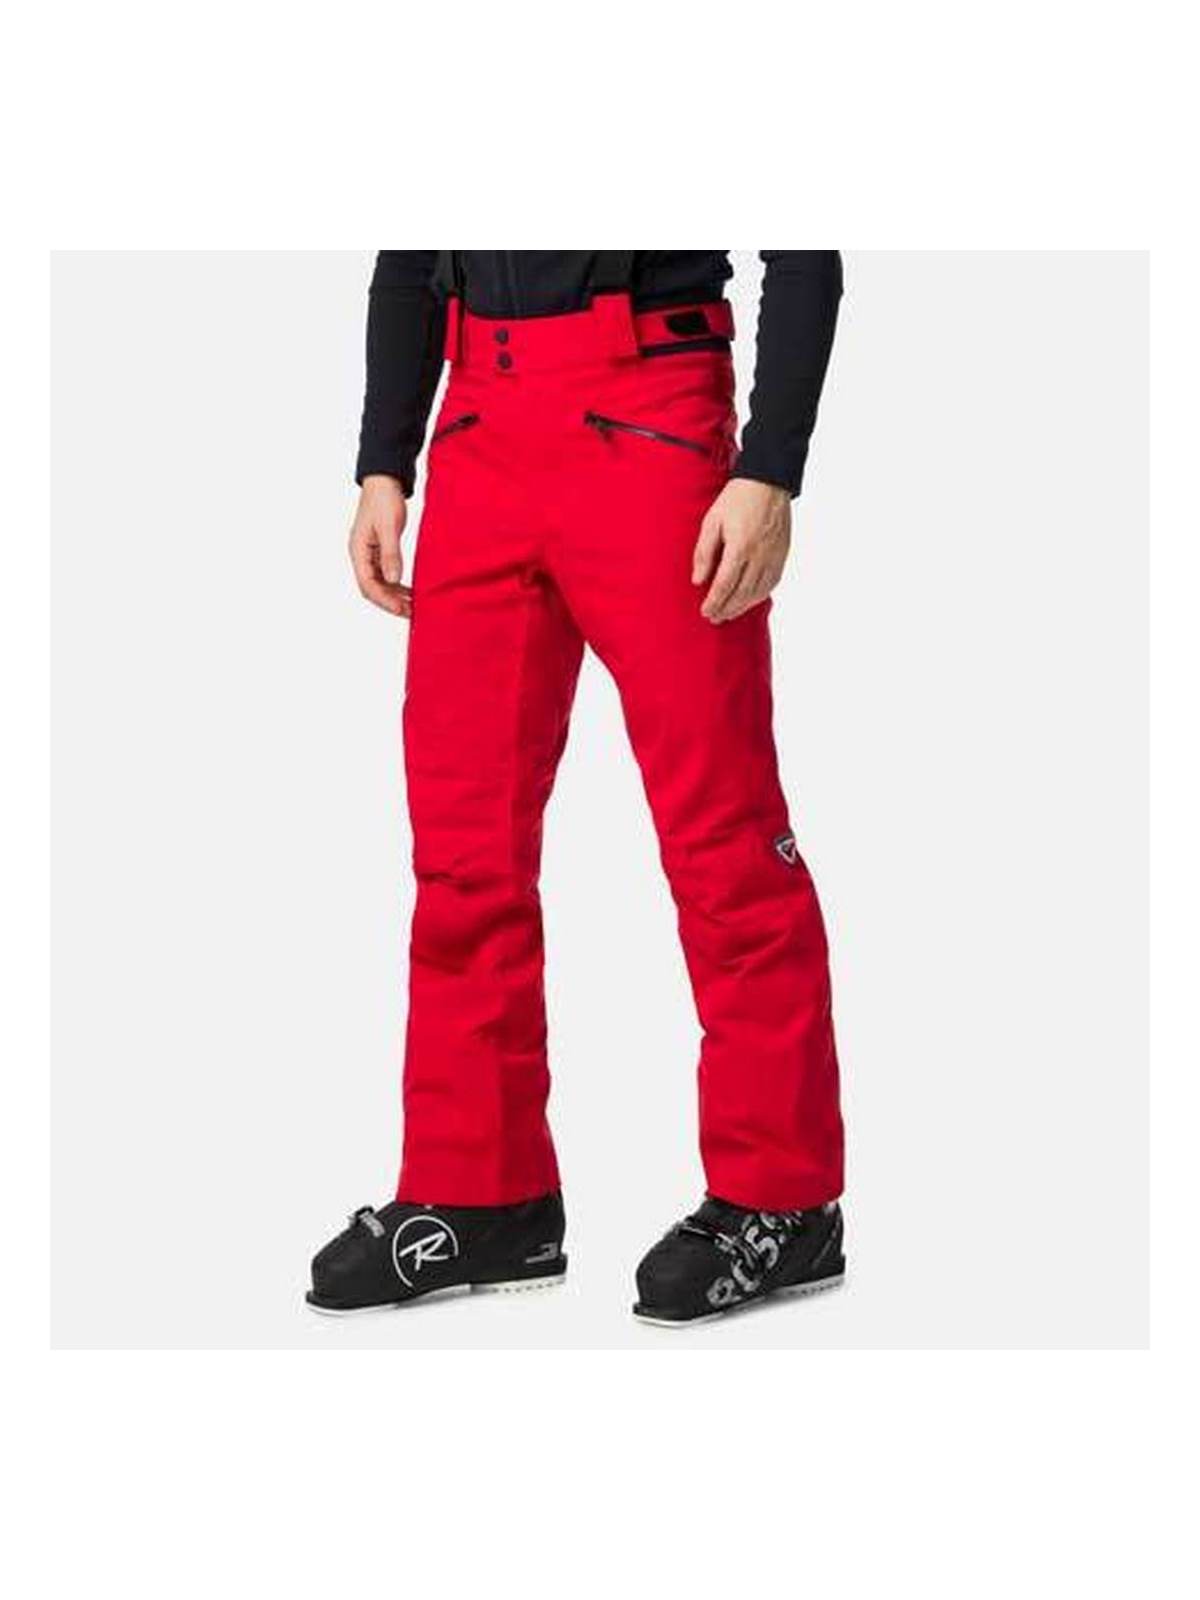 Spodnie narciarskie ROSSIGNOL Classique Pant czerwony